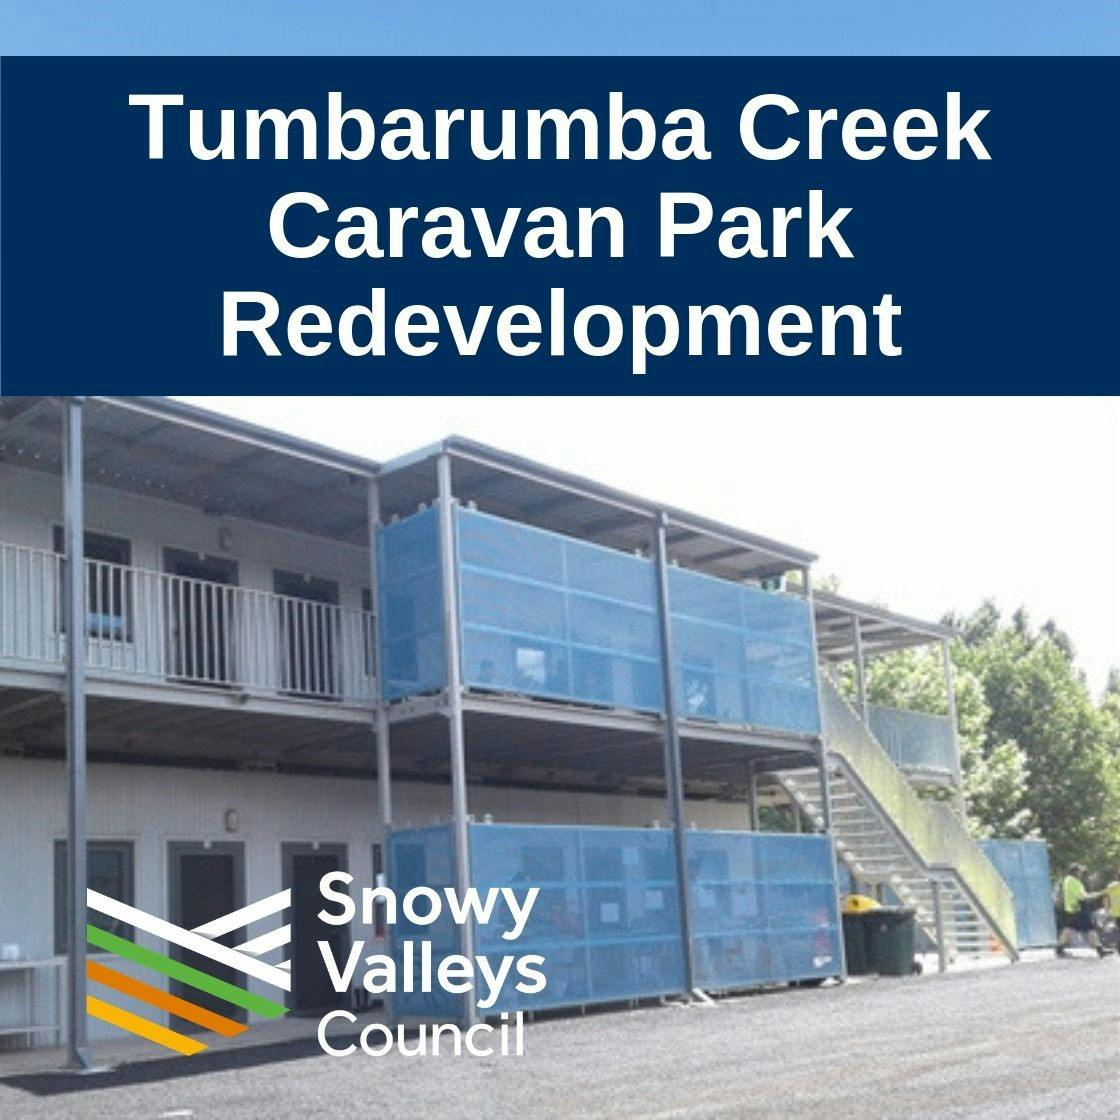 Tumbarumba Creek Caravan Park Redevelopment